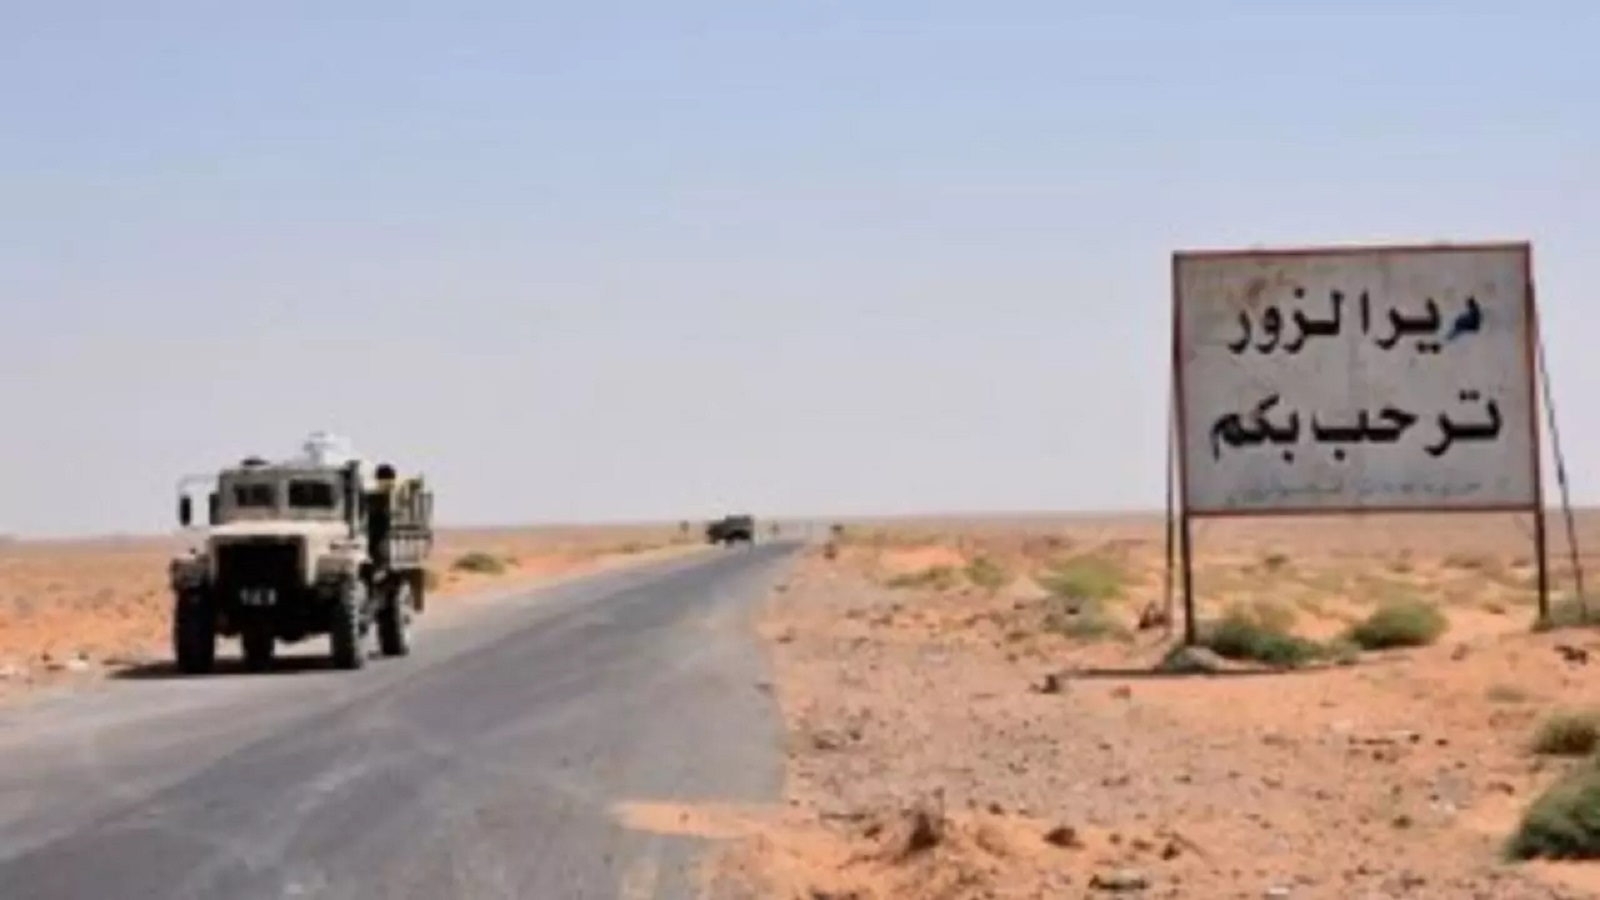 ديرالزور:قوات النظام تفتح باب التطوع برواتب عالية وبأعداد مفتوحة